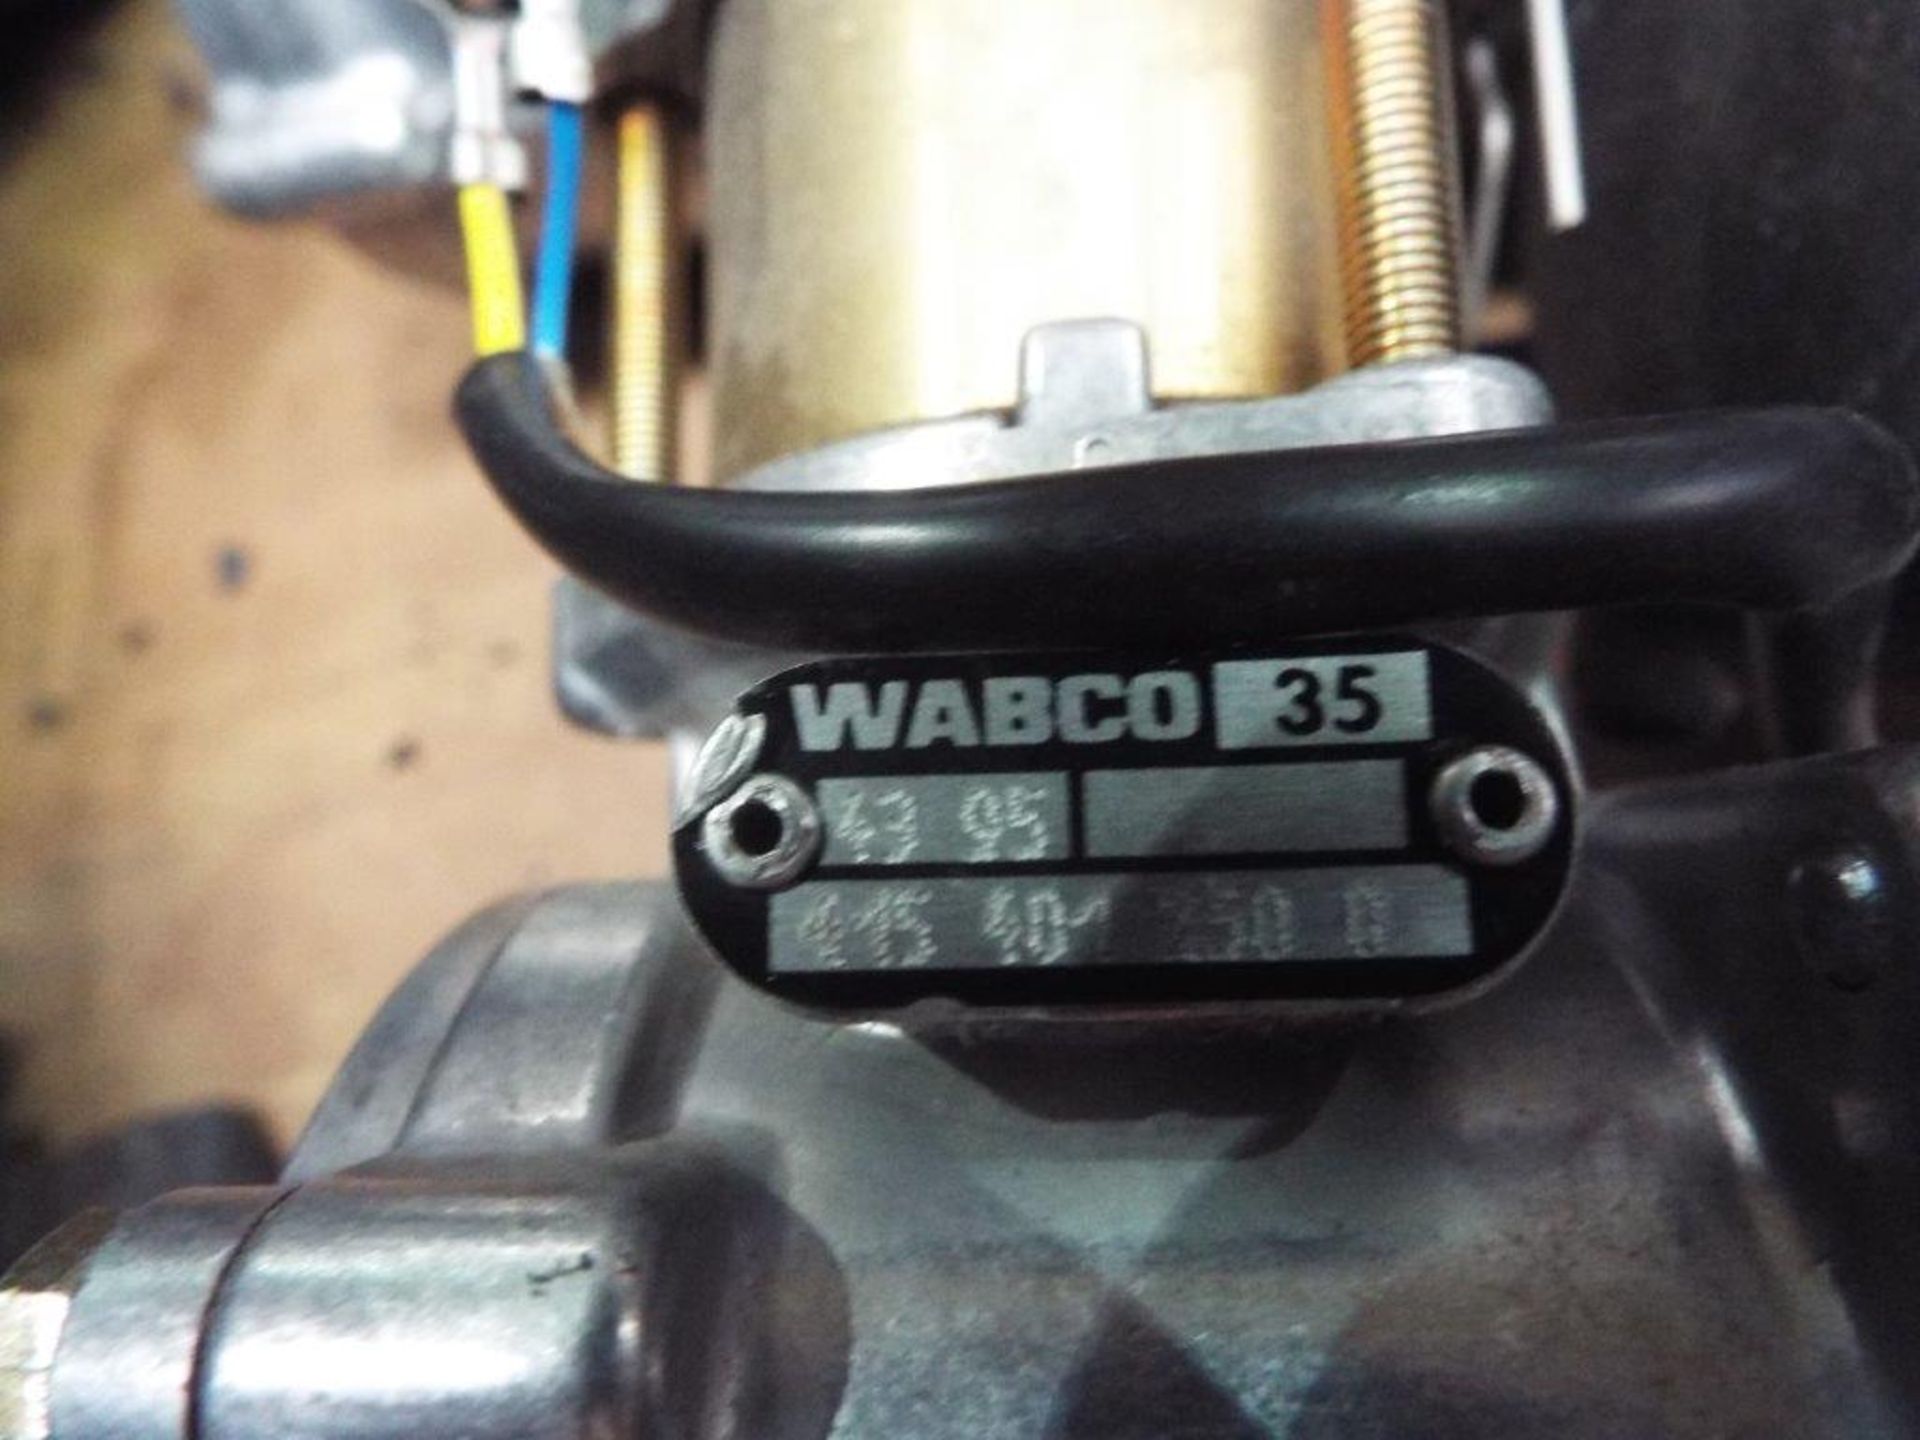 16 x Wabco/Pinzgauer Compressor Assys P/No 758.1.54.511.9 - Image 4 of 7